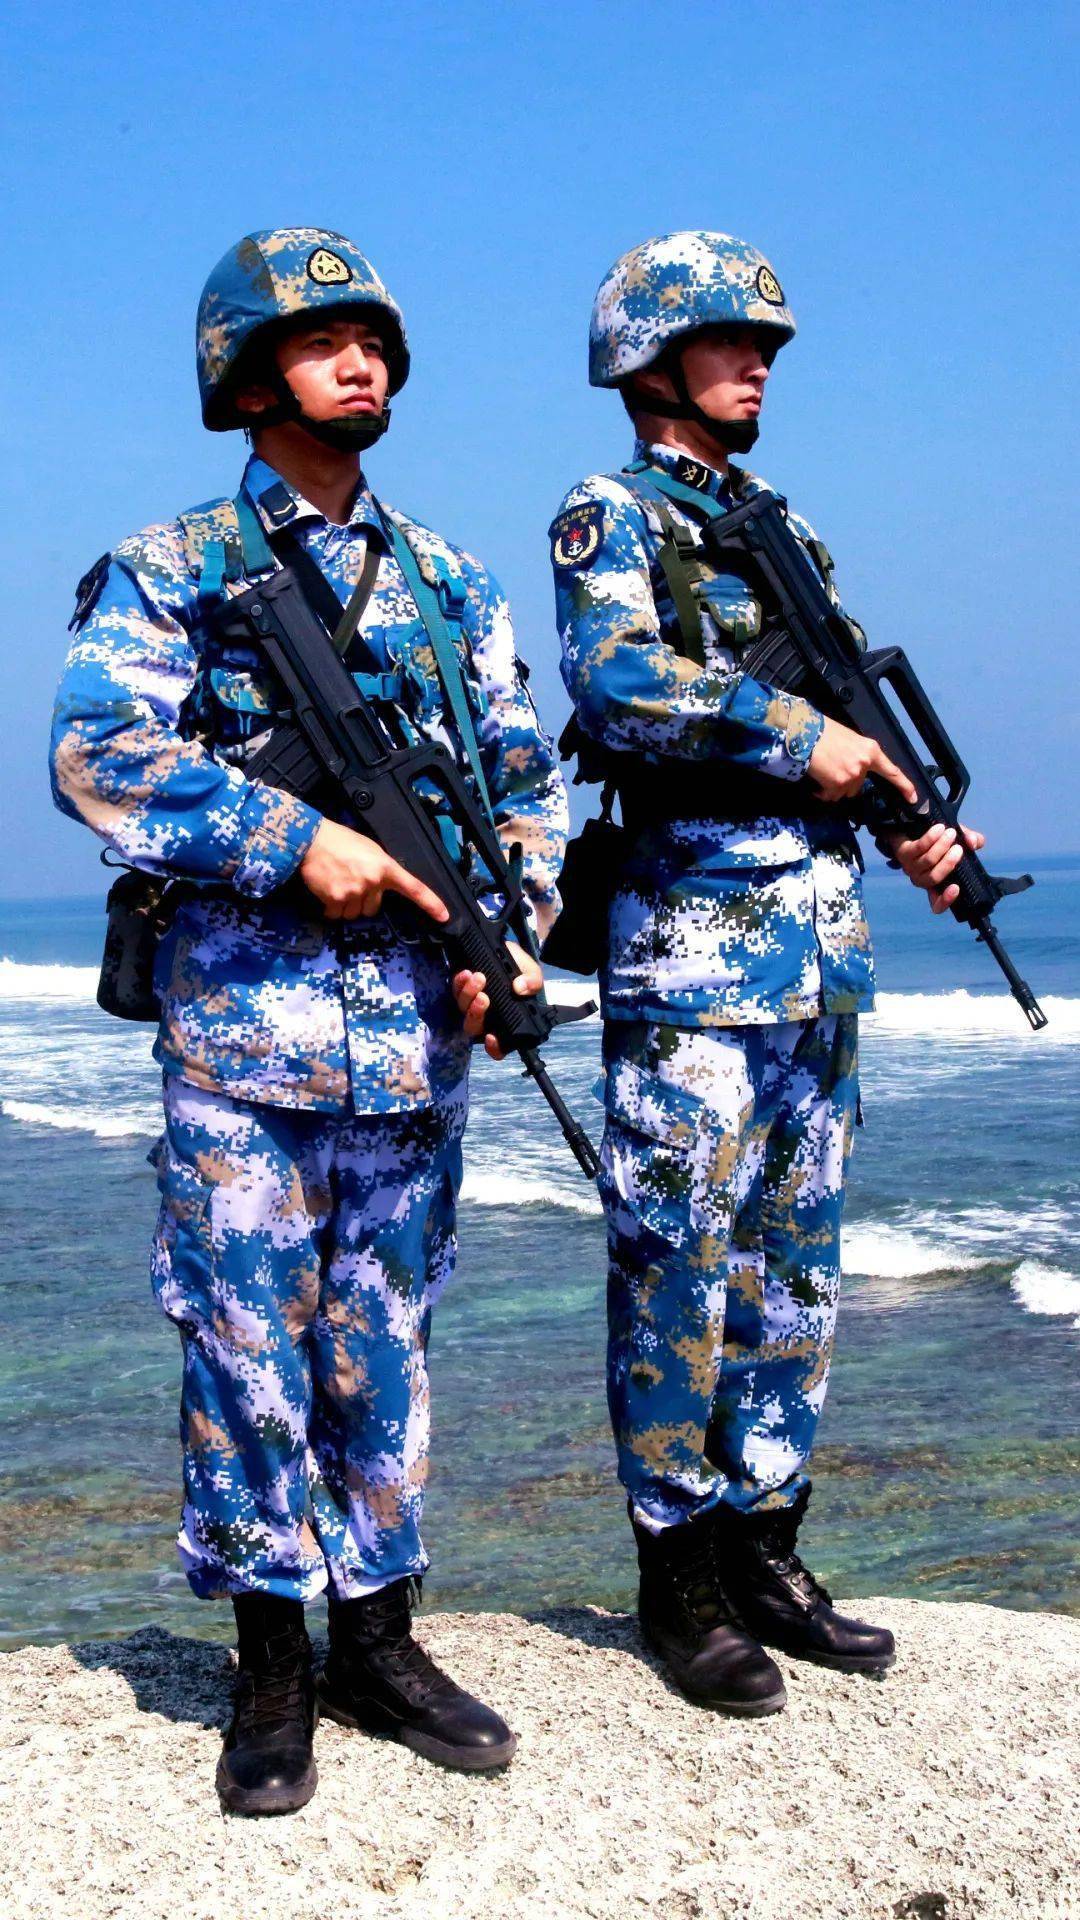 高清壁纸丨碧海蓝天,跟人民海军一起守护